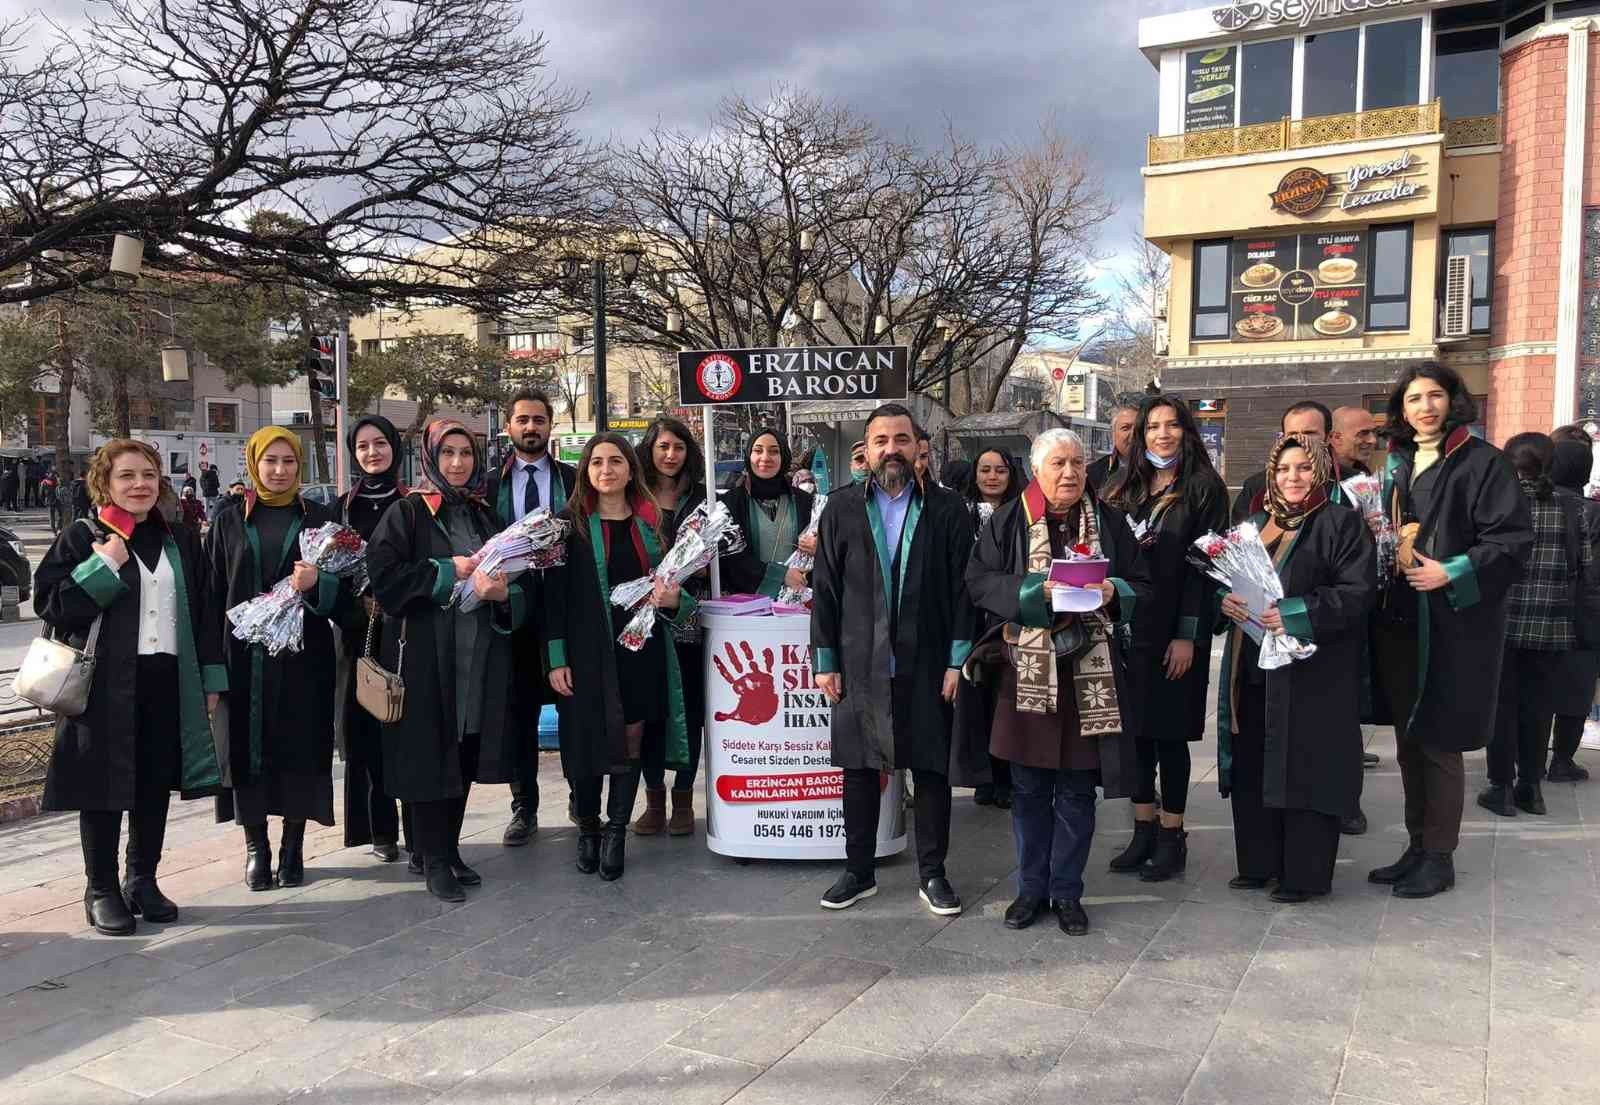 Avukatlar, Kadınlar Gününde kitap ve karanfil dağıttı #erzincan